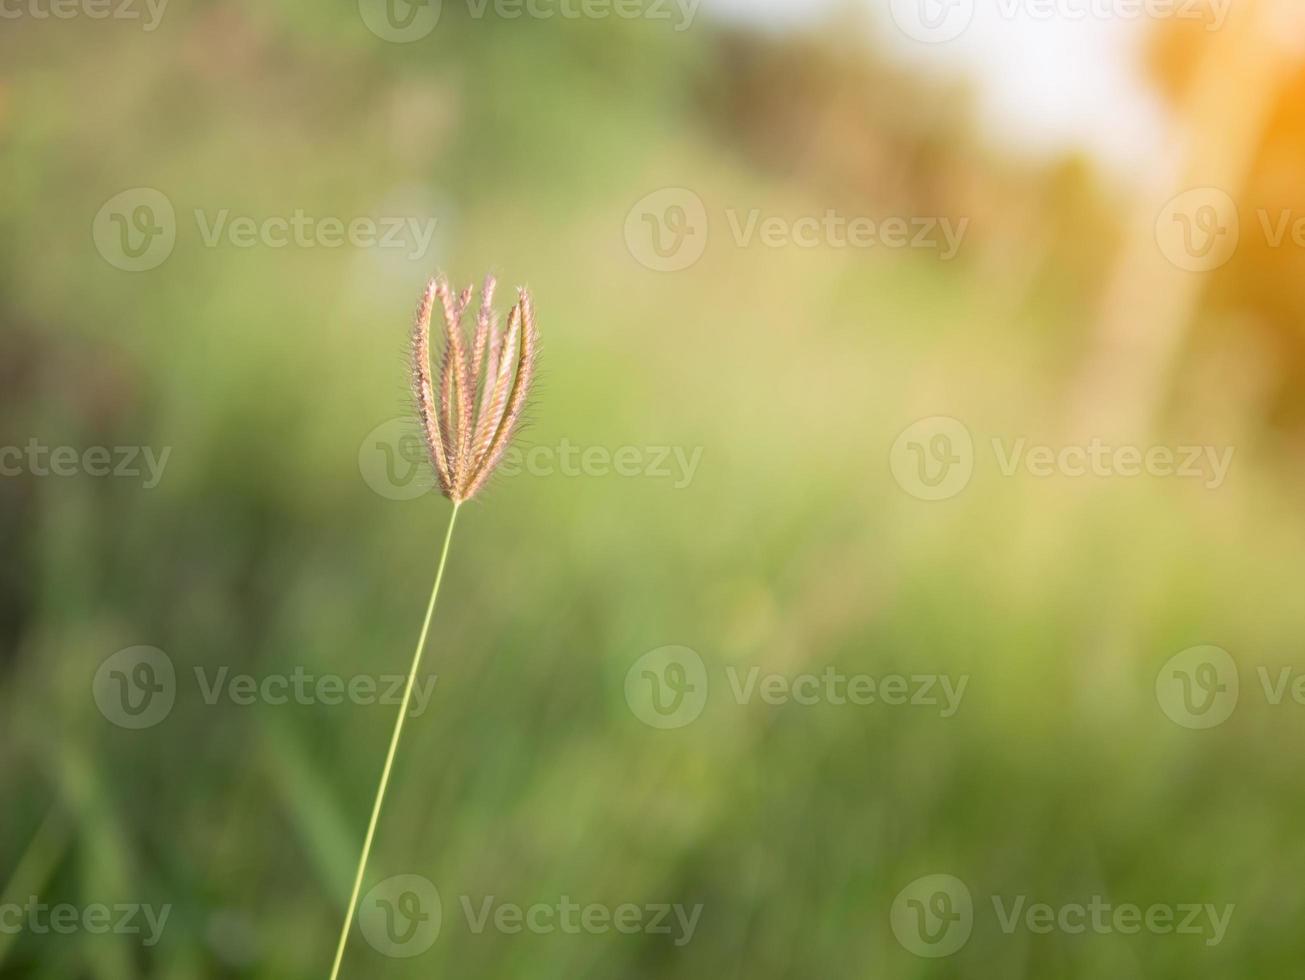 grasbloem op onscherpe achtergrond met zonnestraal foto